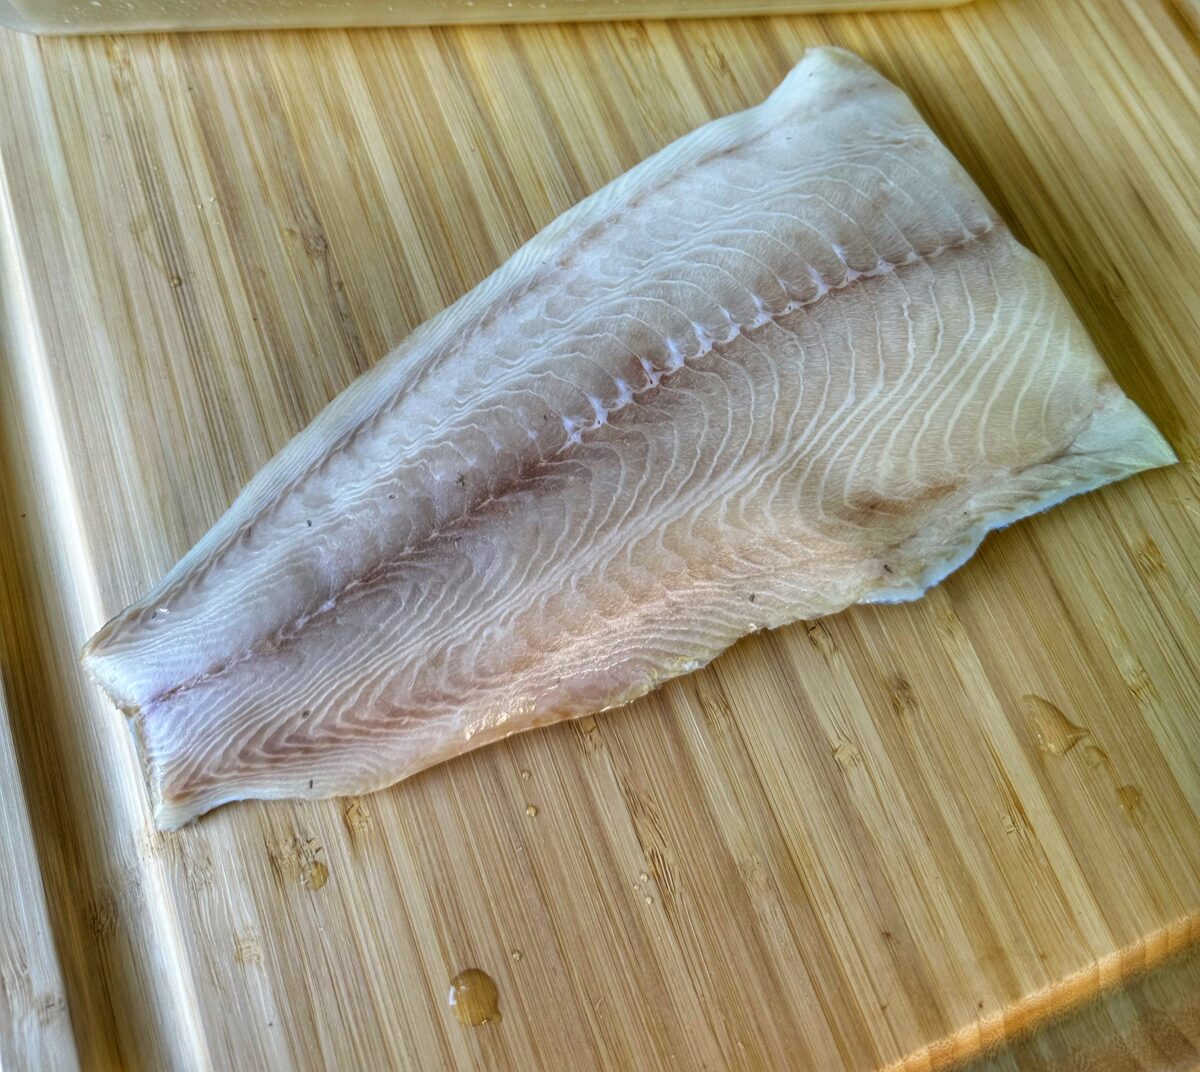 A filet of black cod on a cutting board.